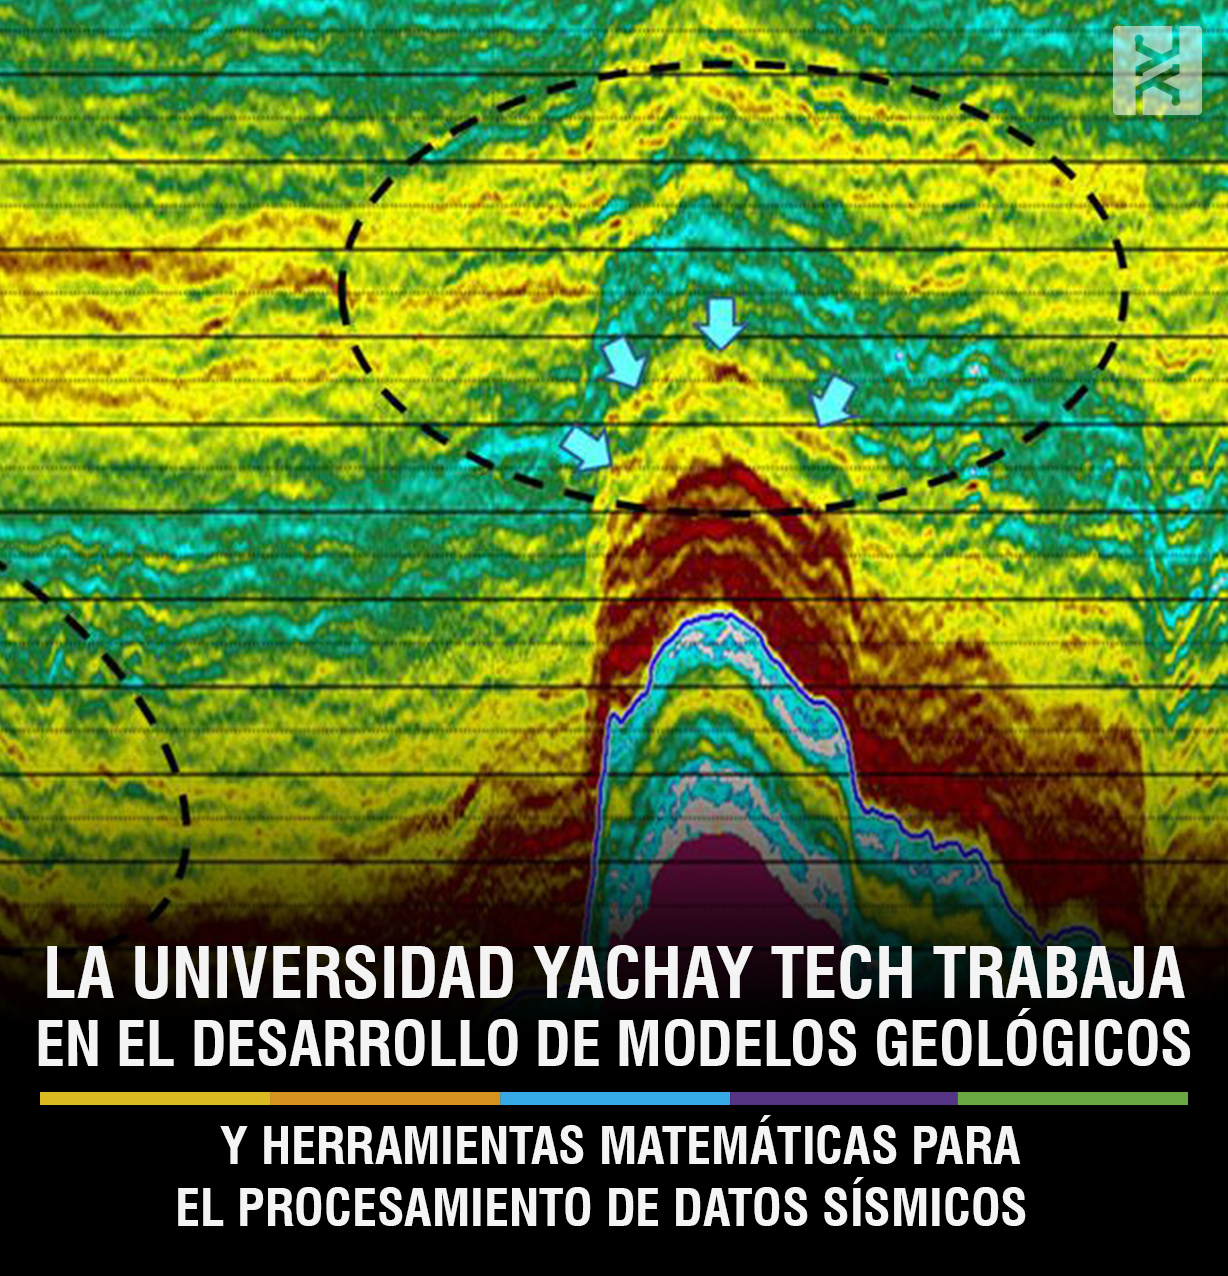 La Universidad Yachay Tech trabaja en el desarrollo de modelos geológicos y herramientas matemáticas para el procesamiento de datos sísmicos